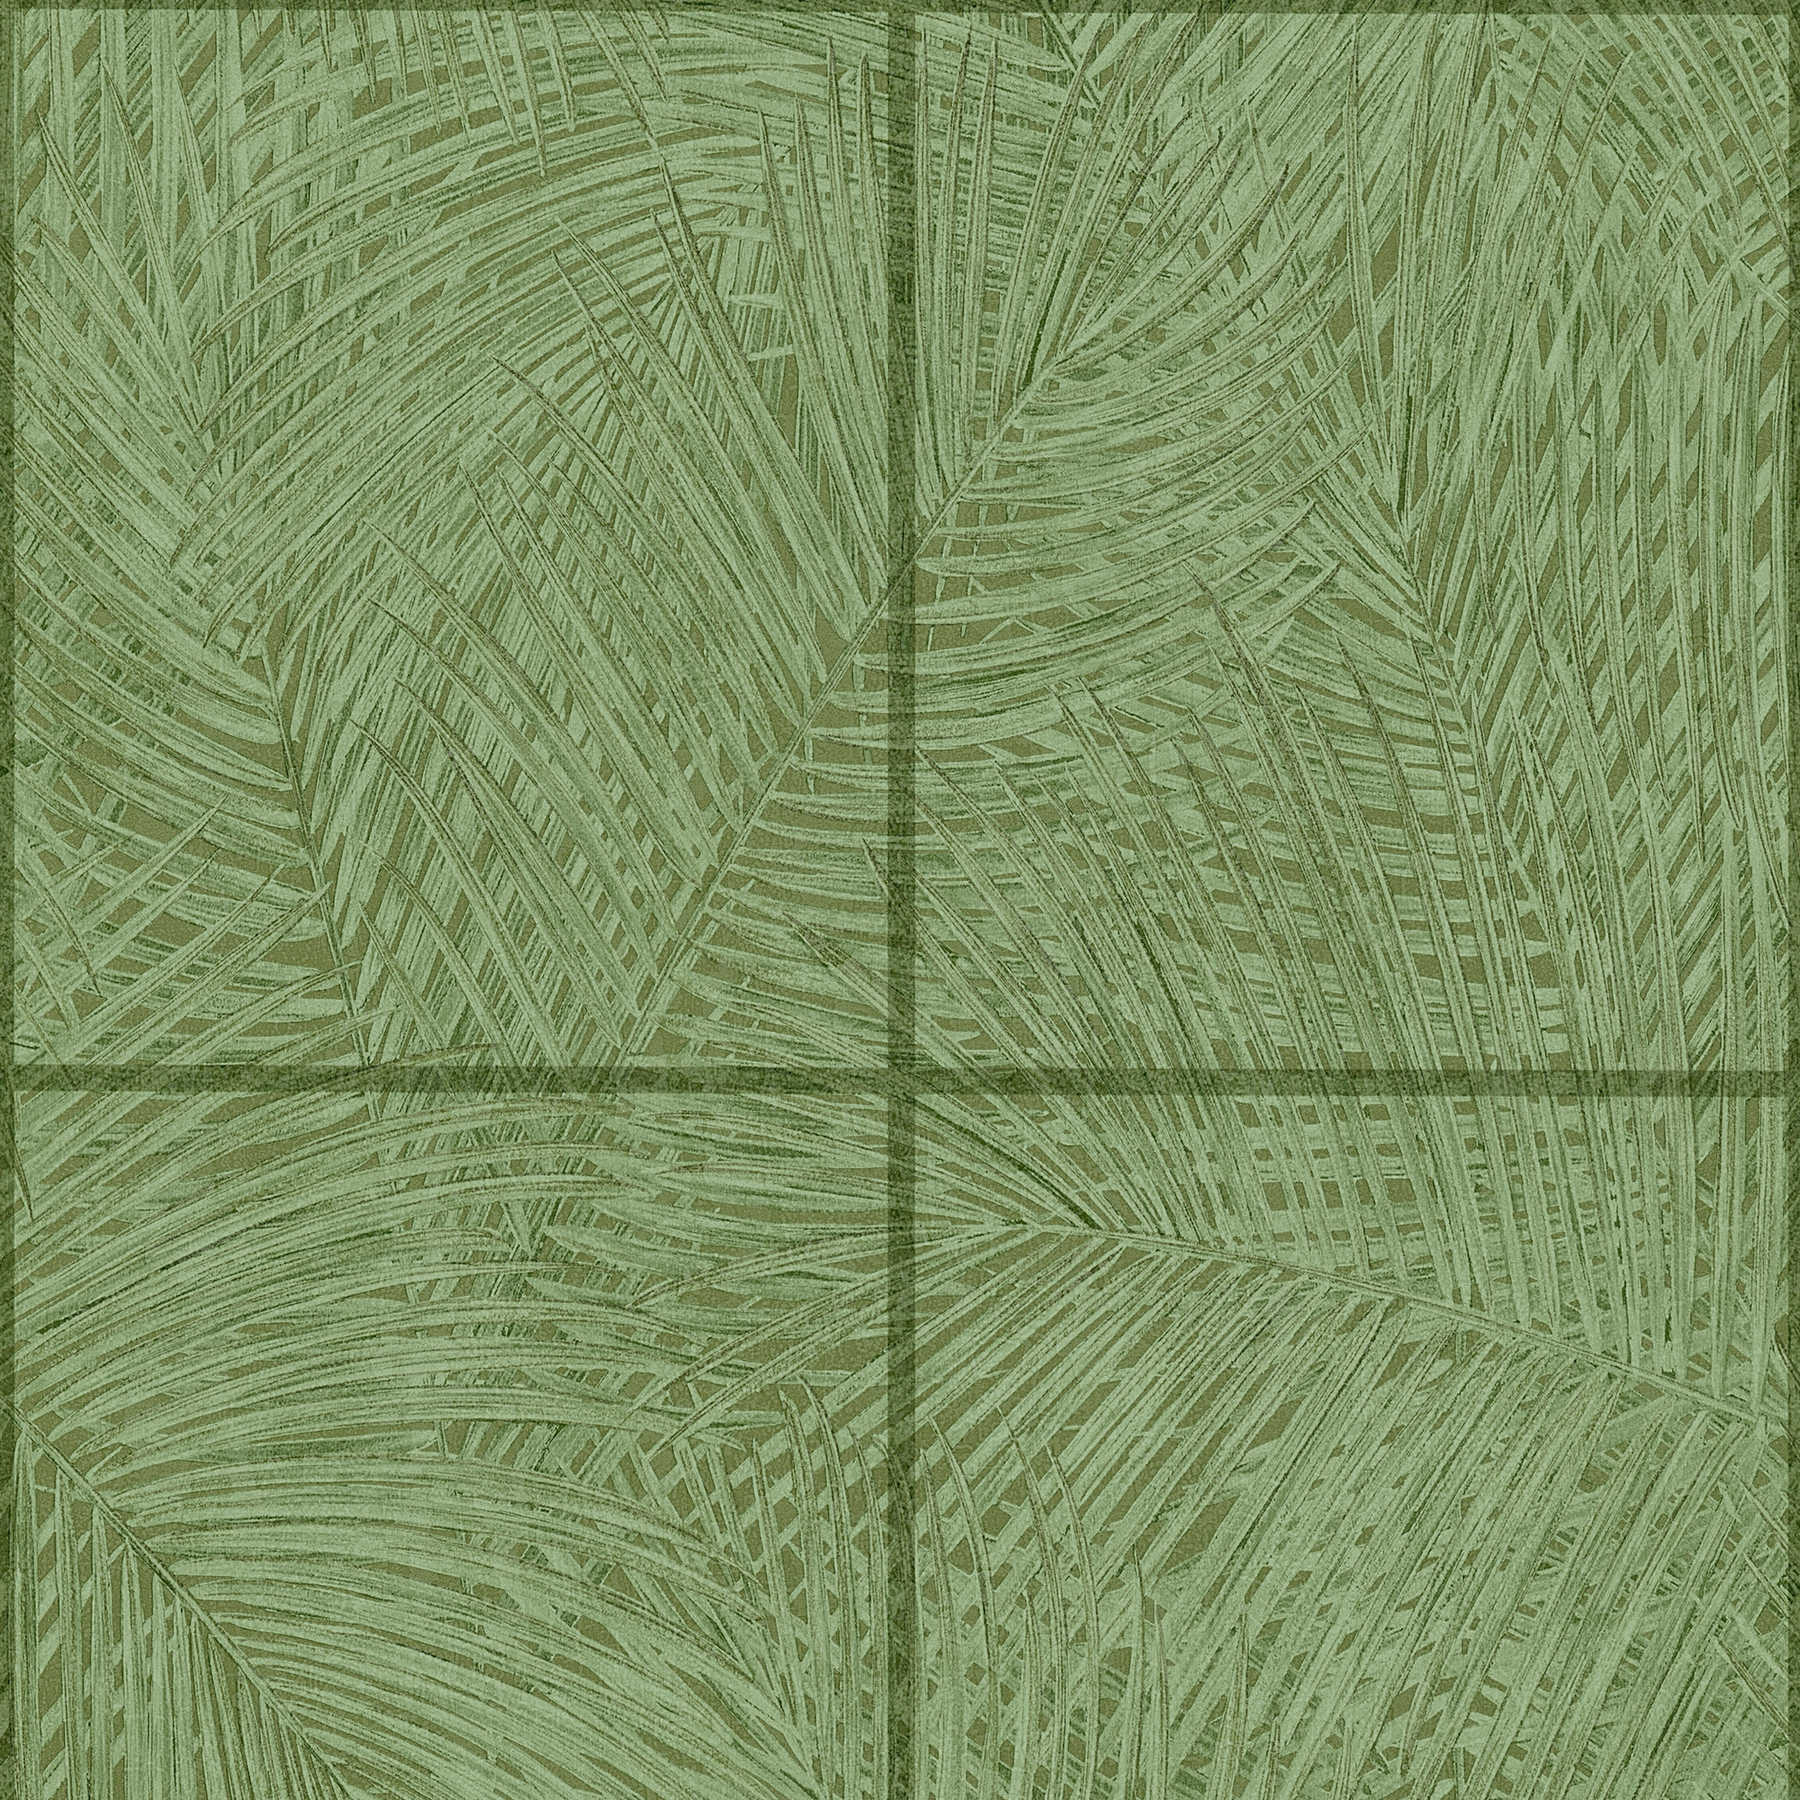         Wallpaper with tile design & leaf motif - green
    